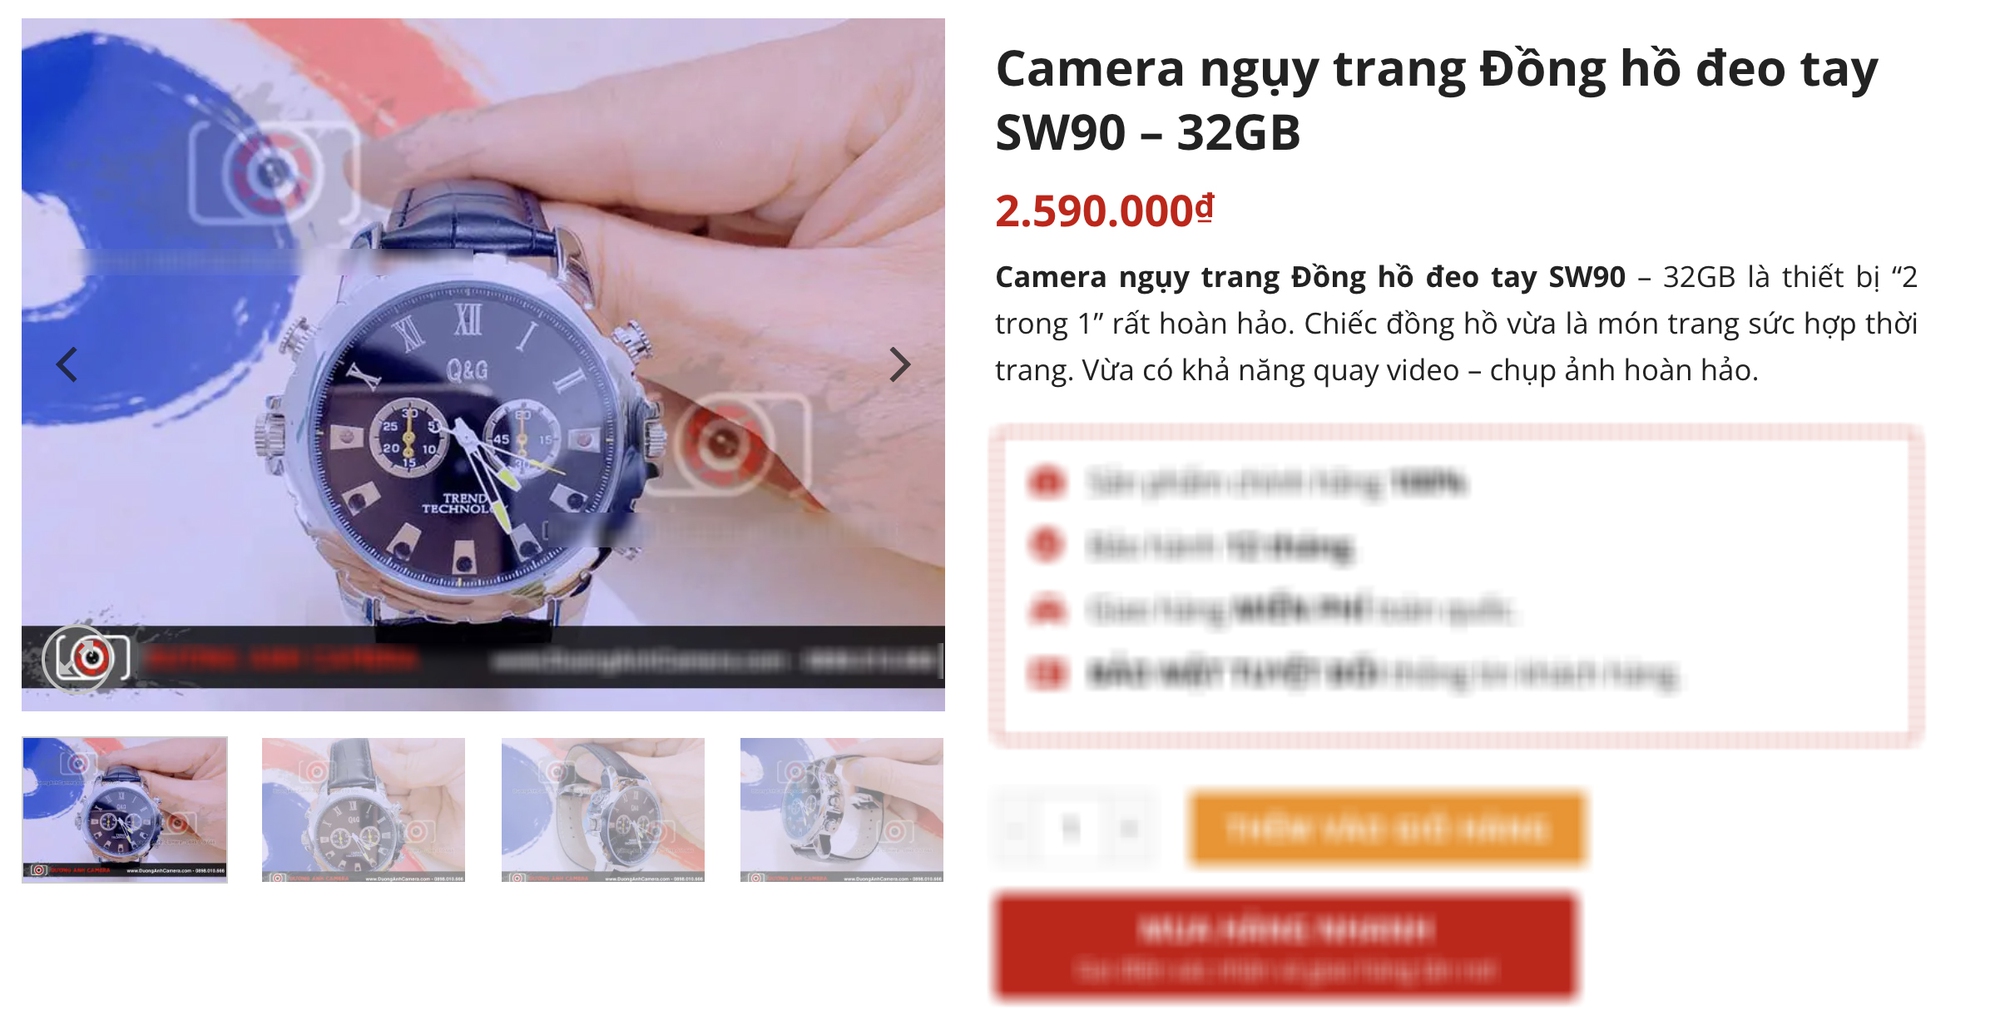 Đồng hồ giả camera quay lén Châu Bùi được bán tràn lan, nhận diện những mẫu đồng hồ phải đặc biệt cảnh giác!- Ảnh 6.